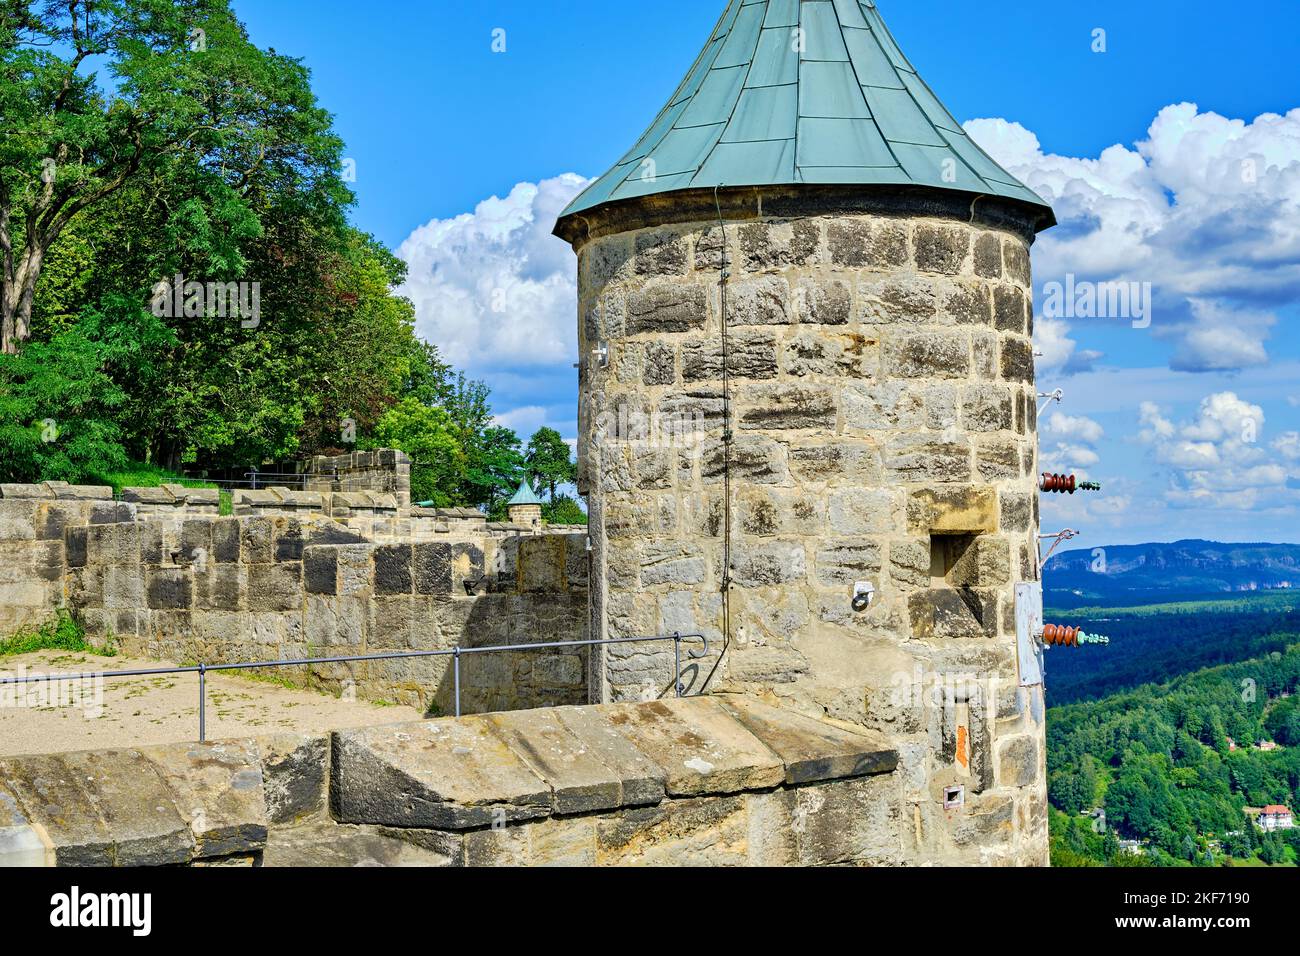 Wachturm und Festungsmauern, Königsteinfestung, Königstein, Sachsen, Schweiz, Sachsen, Deutschland. Stockfoto